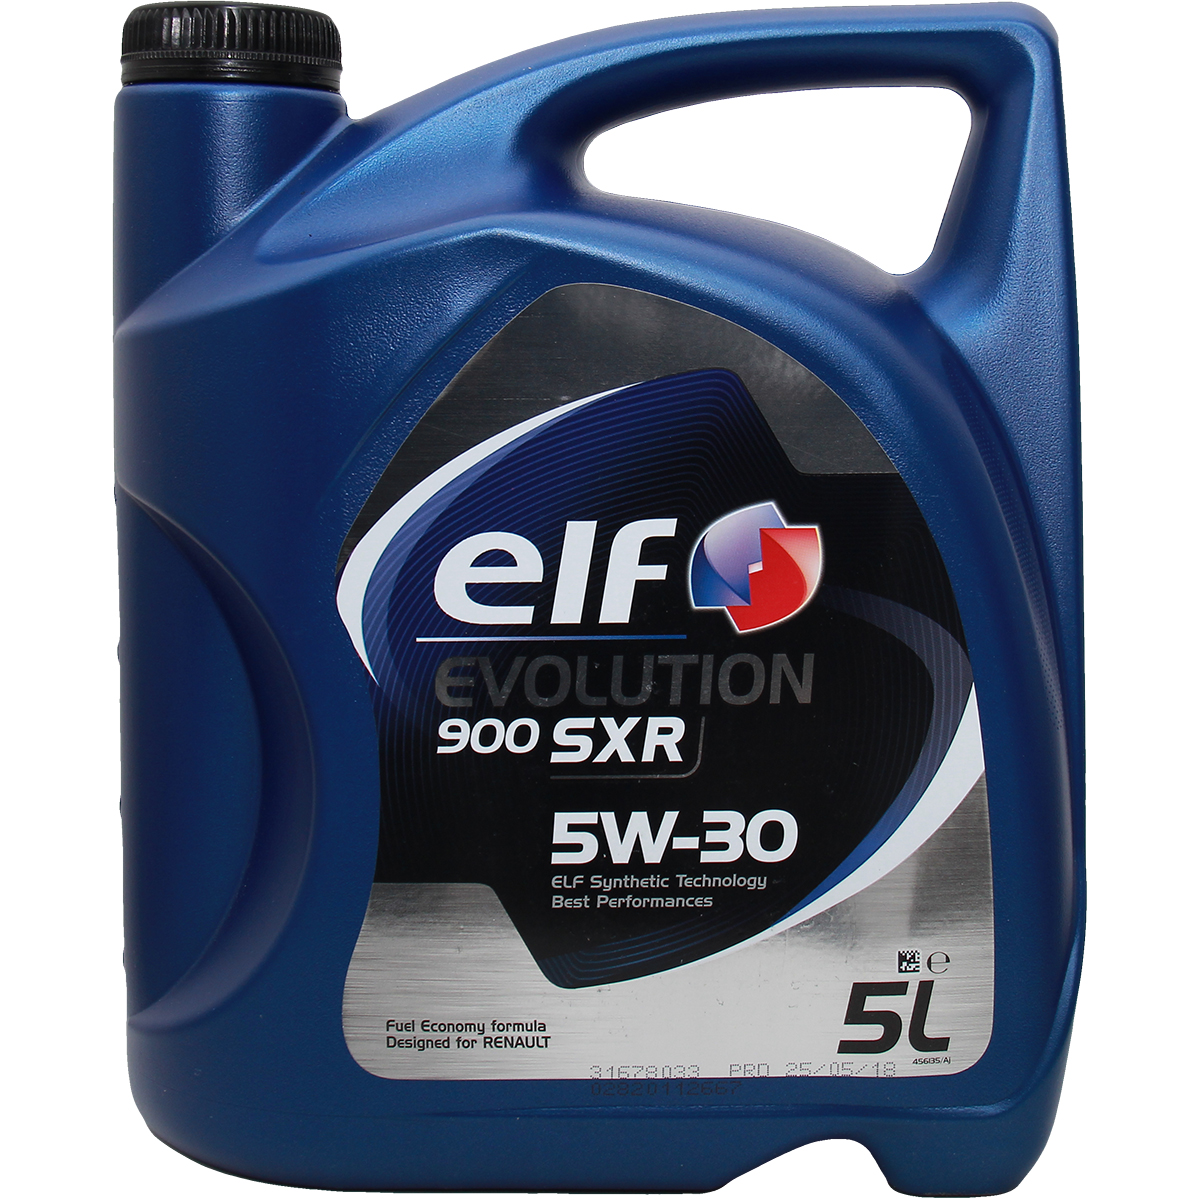 Elf Evolution 900 SXR 5W-30 5 Liter